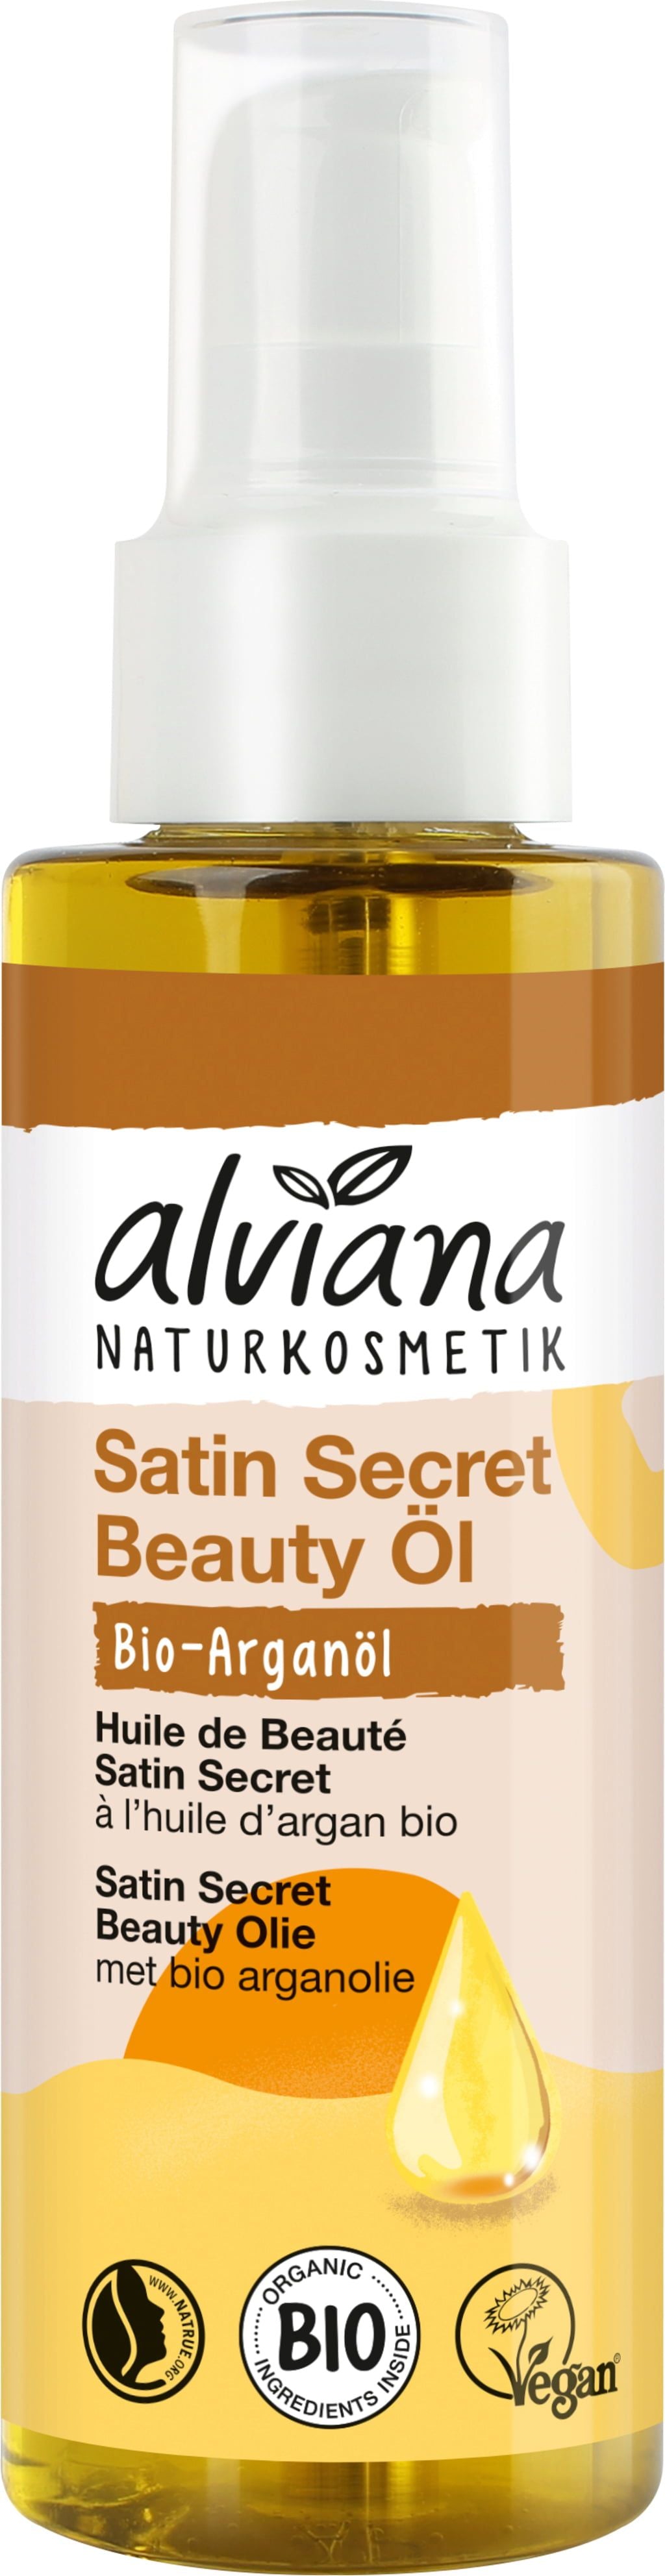 Alviana Satin Secret Beauty Oil kauneusöljy, 100 ml